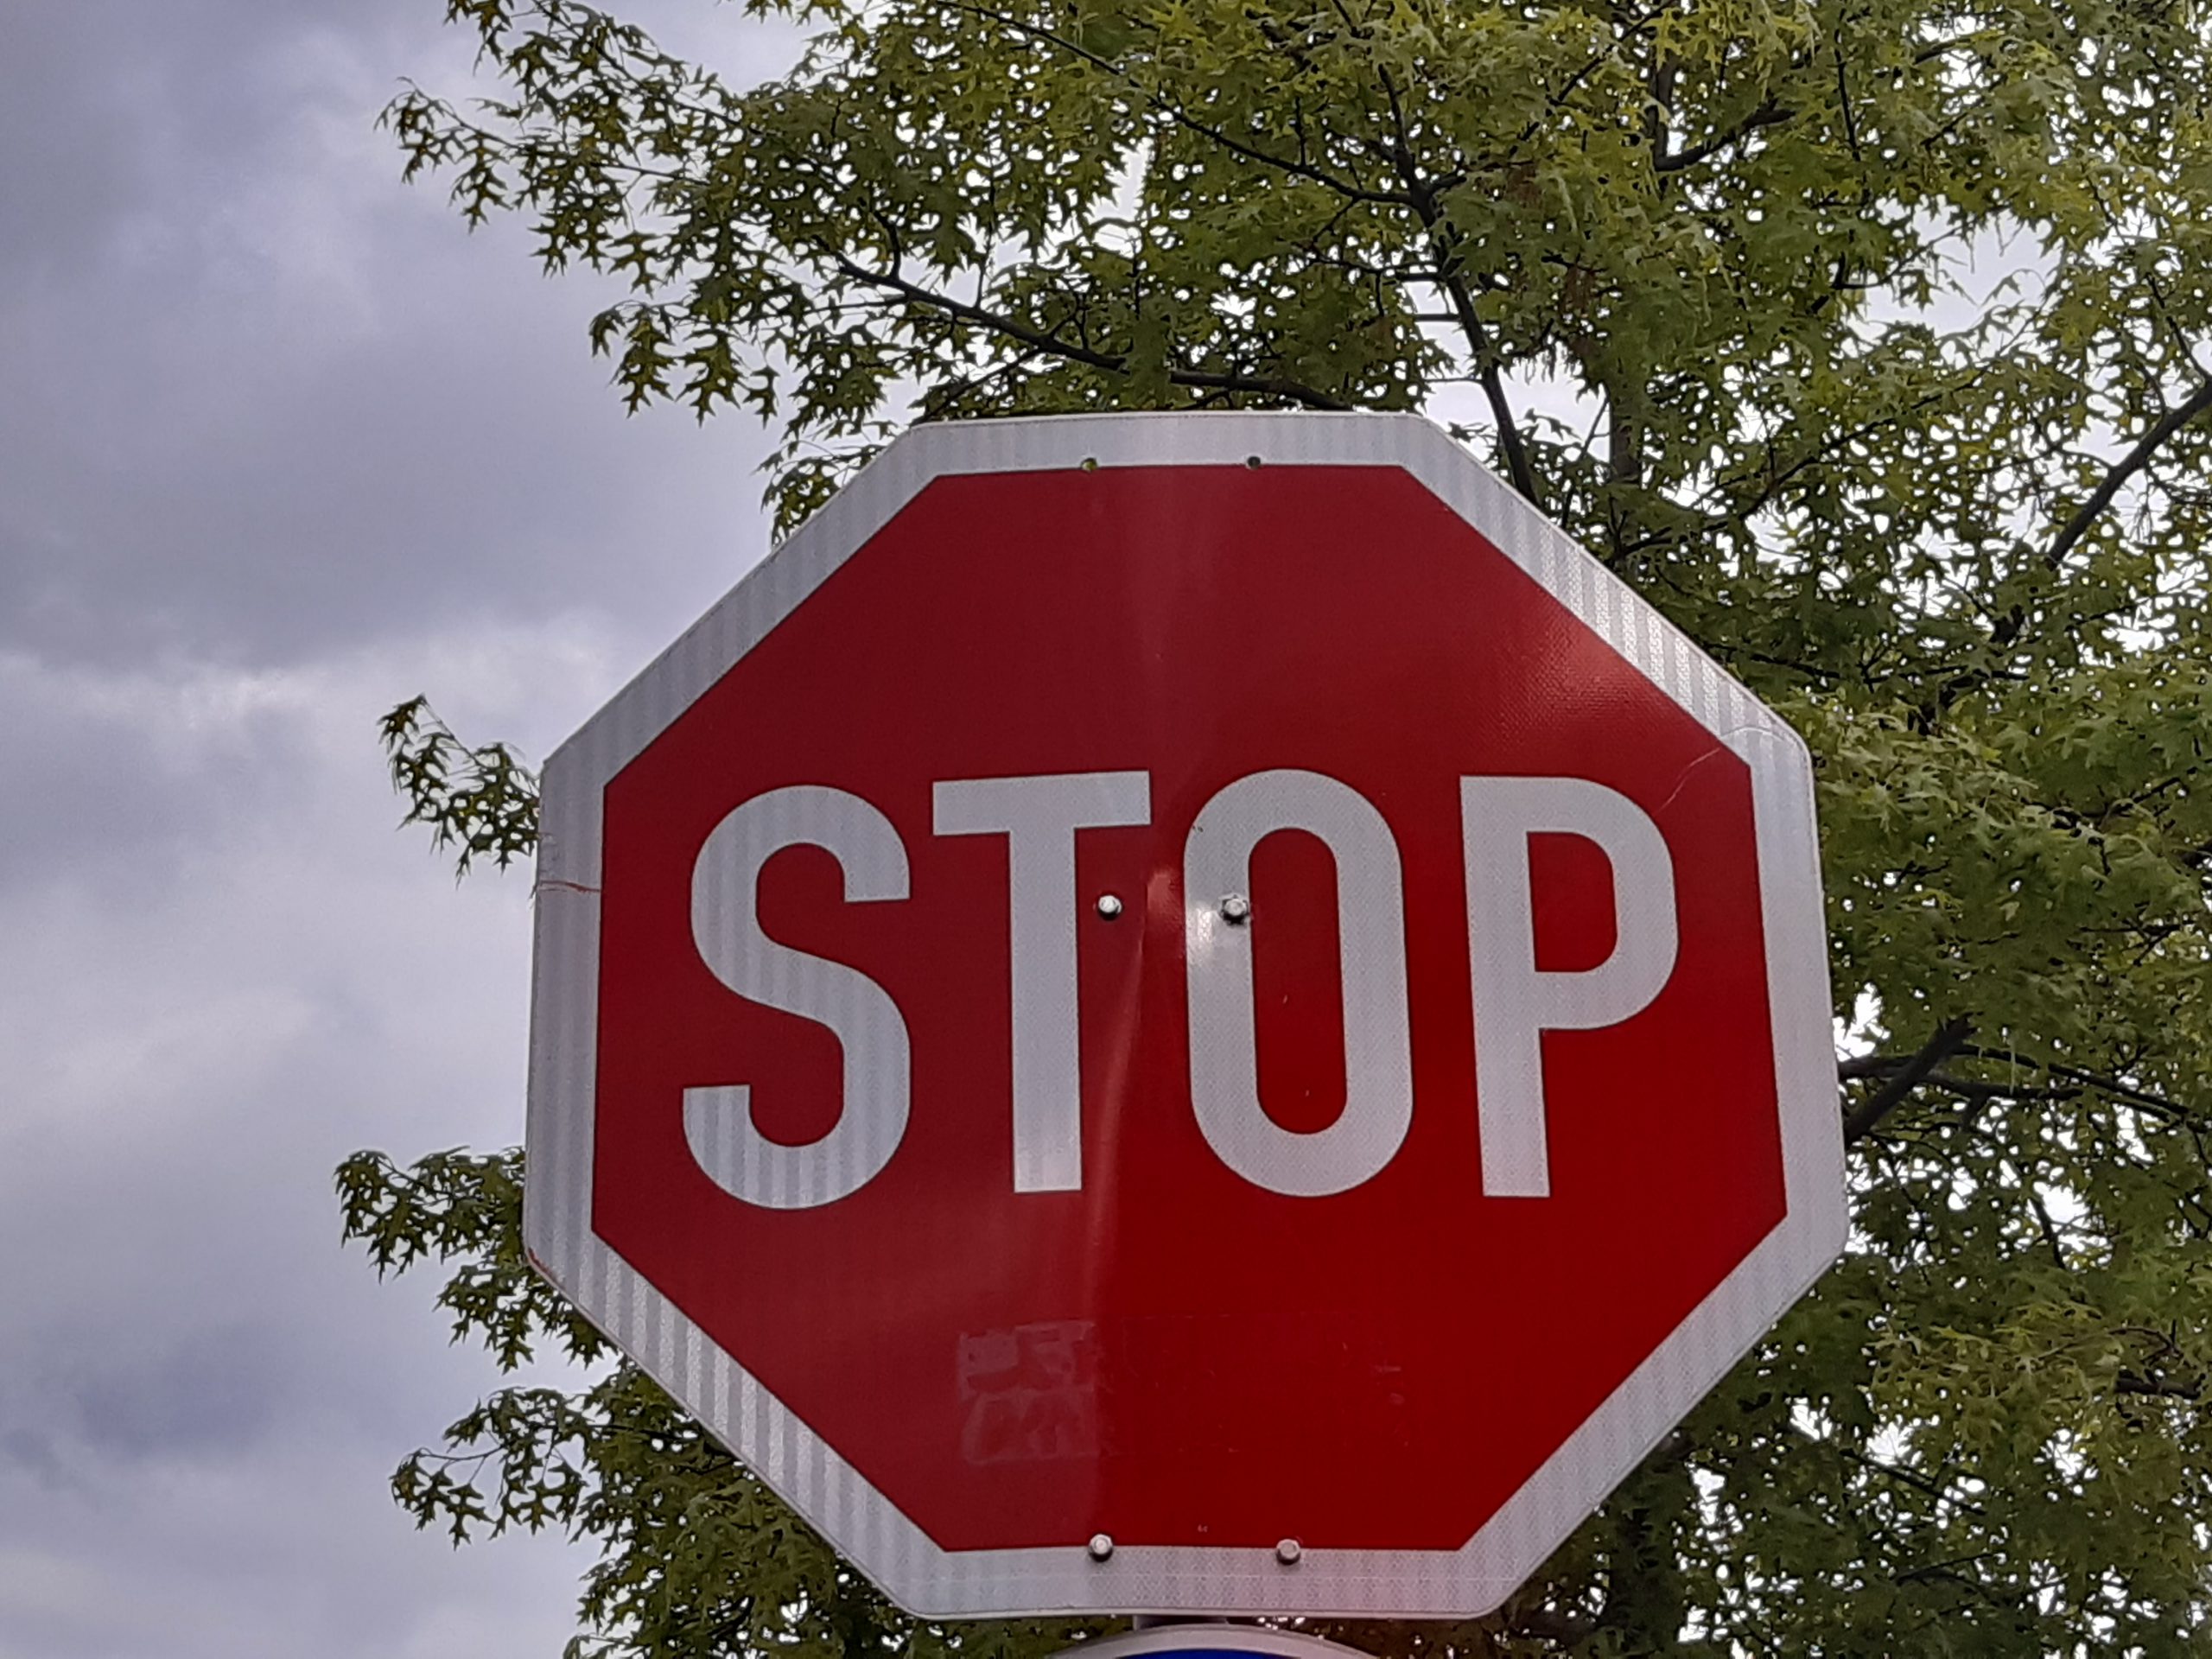 Polizei-birne mit einem stoppschild wandposter • poster Stop-Schild,  Strafverfolgungsbehörden, cop